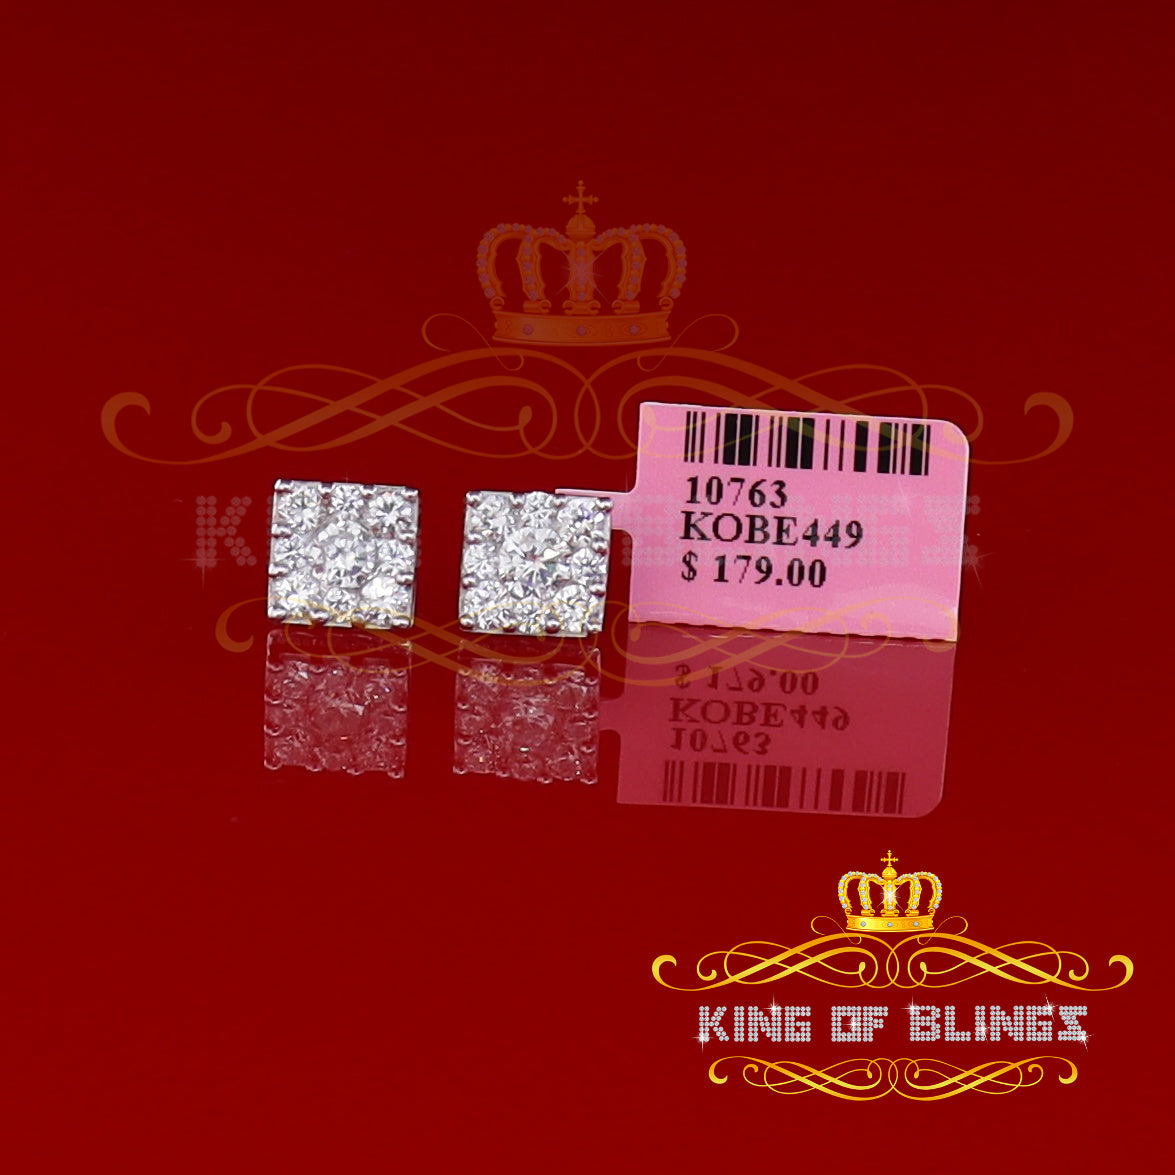 King of Blings- 925 White 1.46ct Sterling Silver Cubic Zirconia Women's & Men's Square Earrings KING OF BLINGS